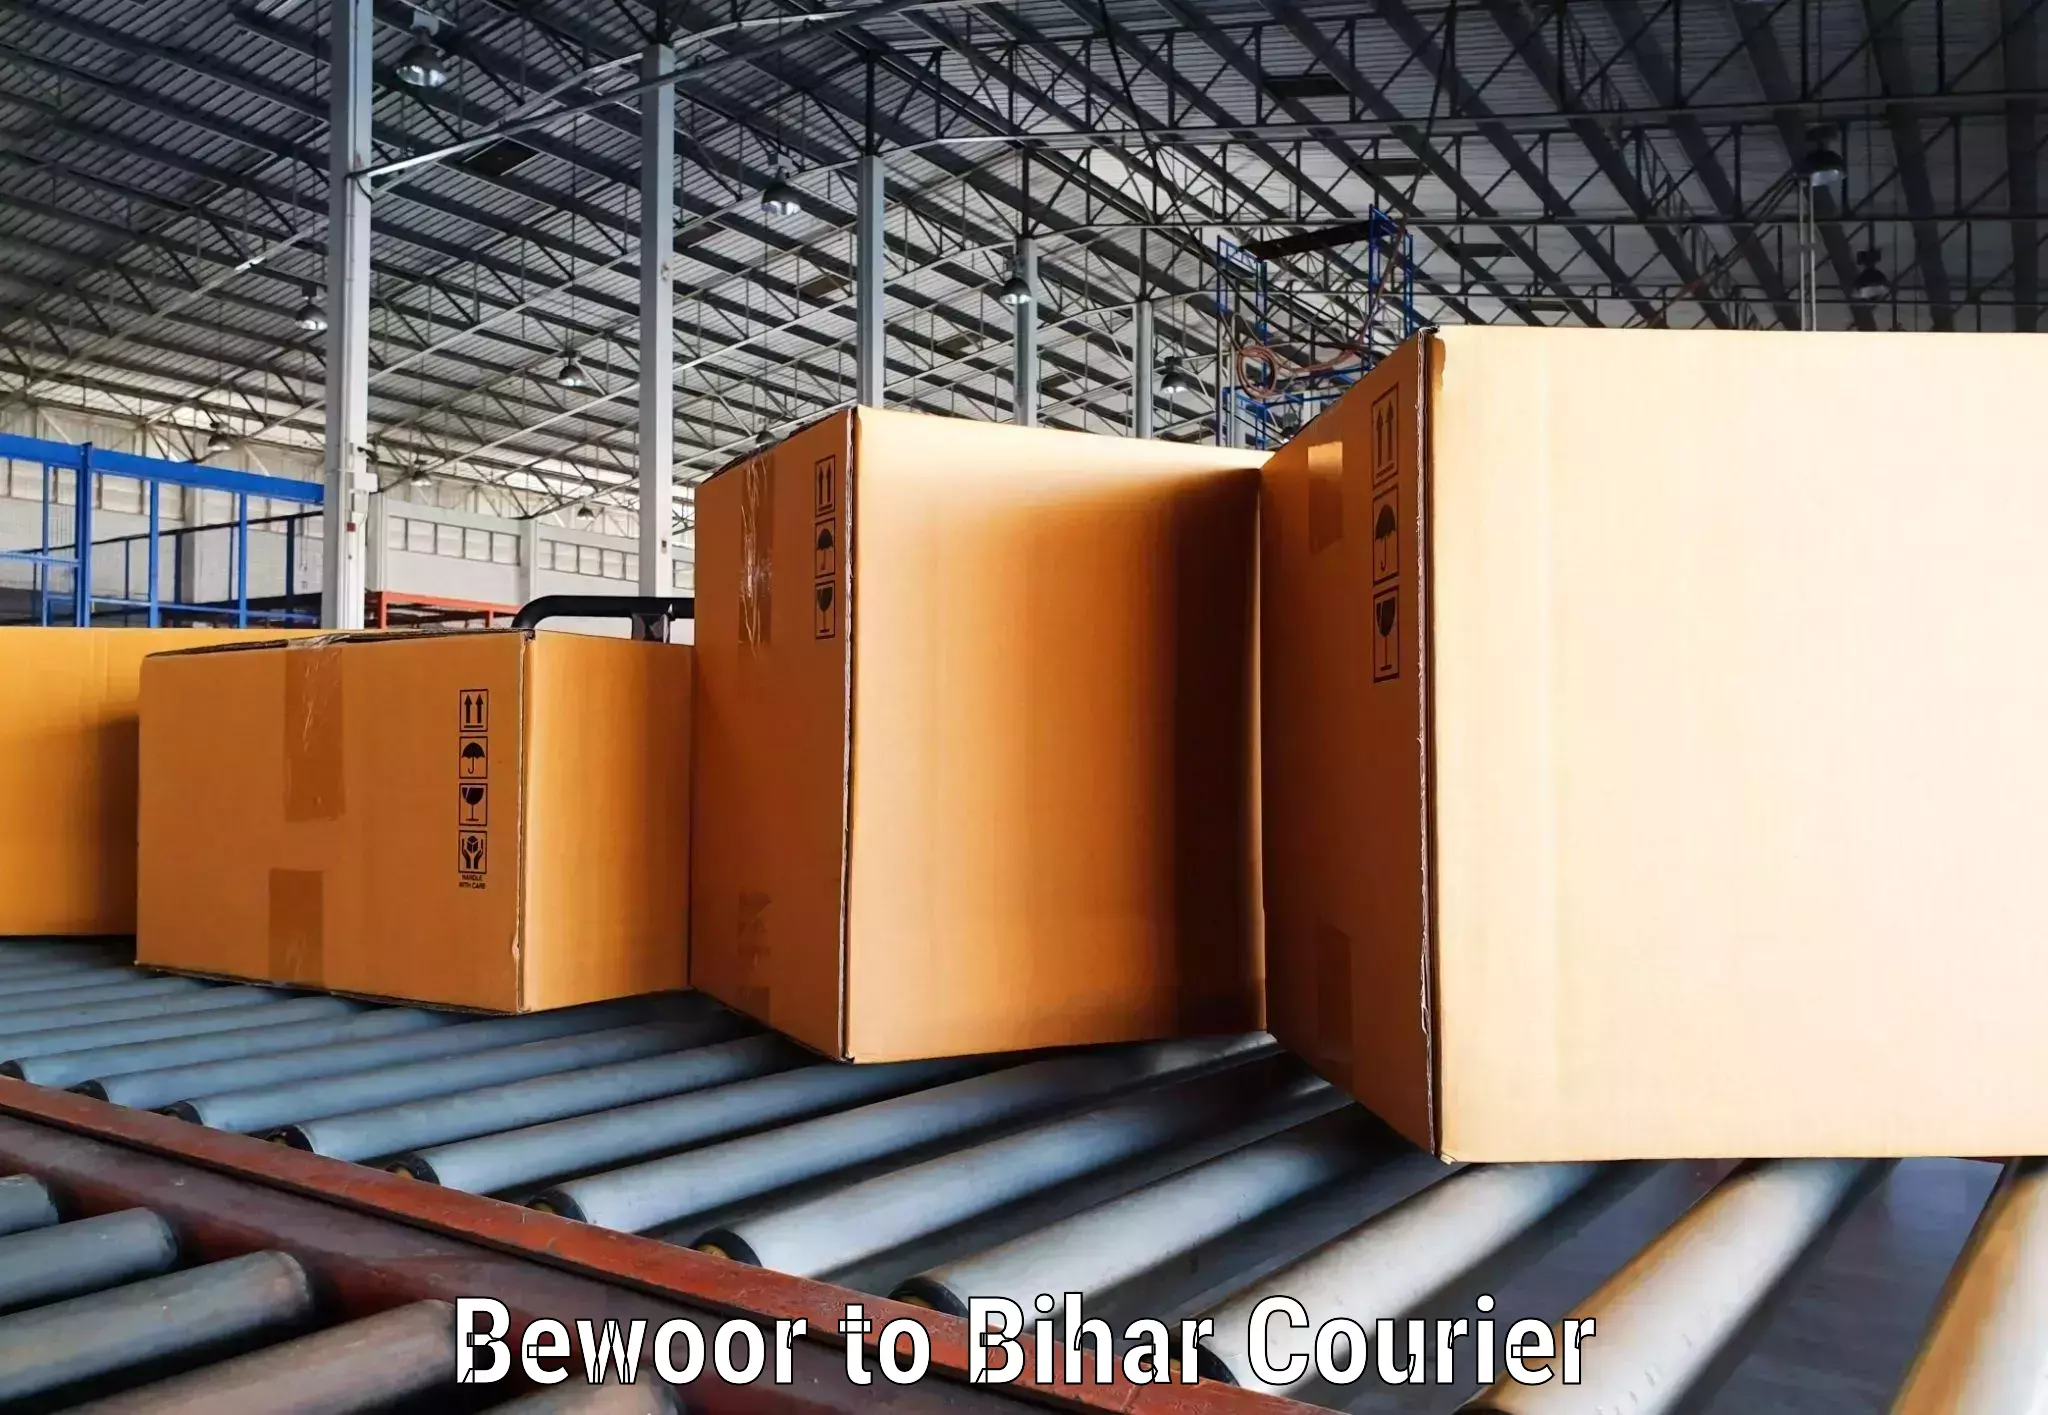 High-capacity parcel service Bewoor to Rusera